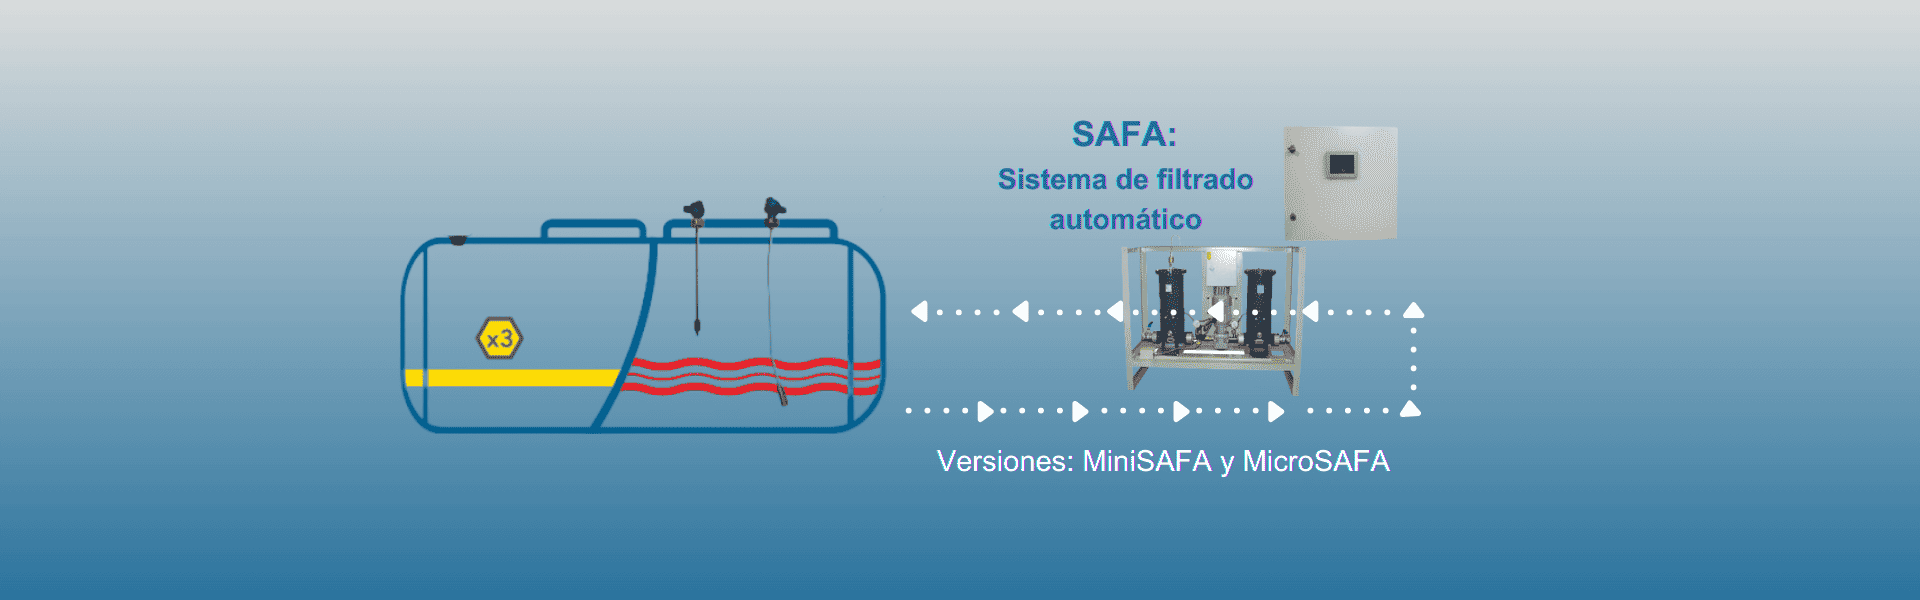 Sistemas de filtrado automático: SAFA, MiniSAFA y MicroSAFA